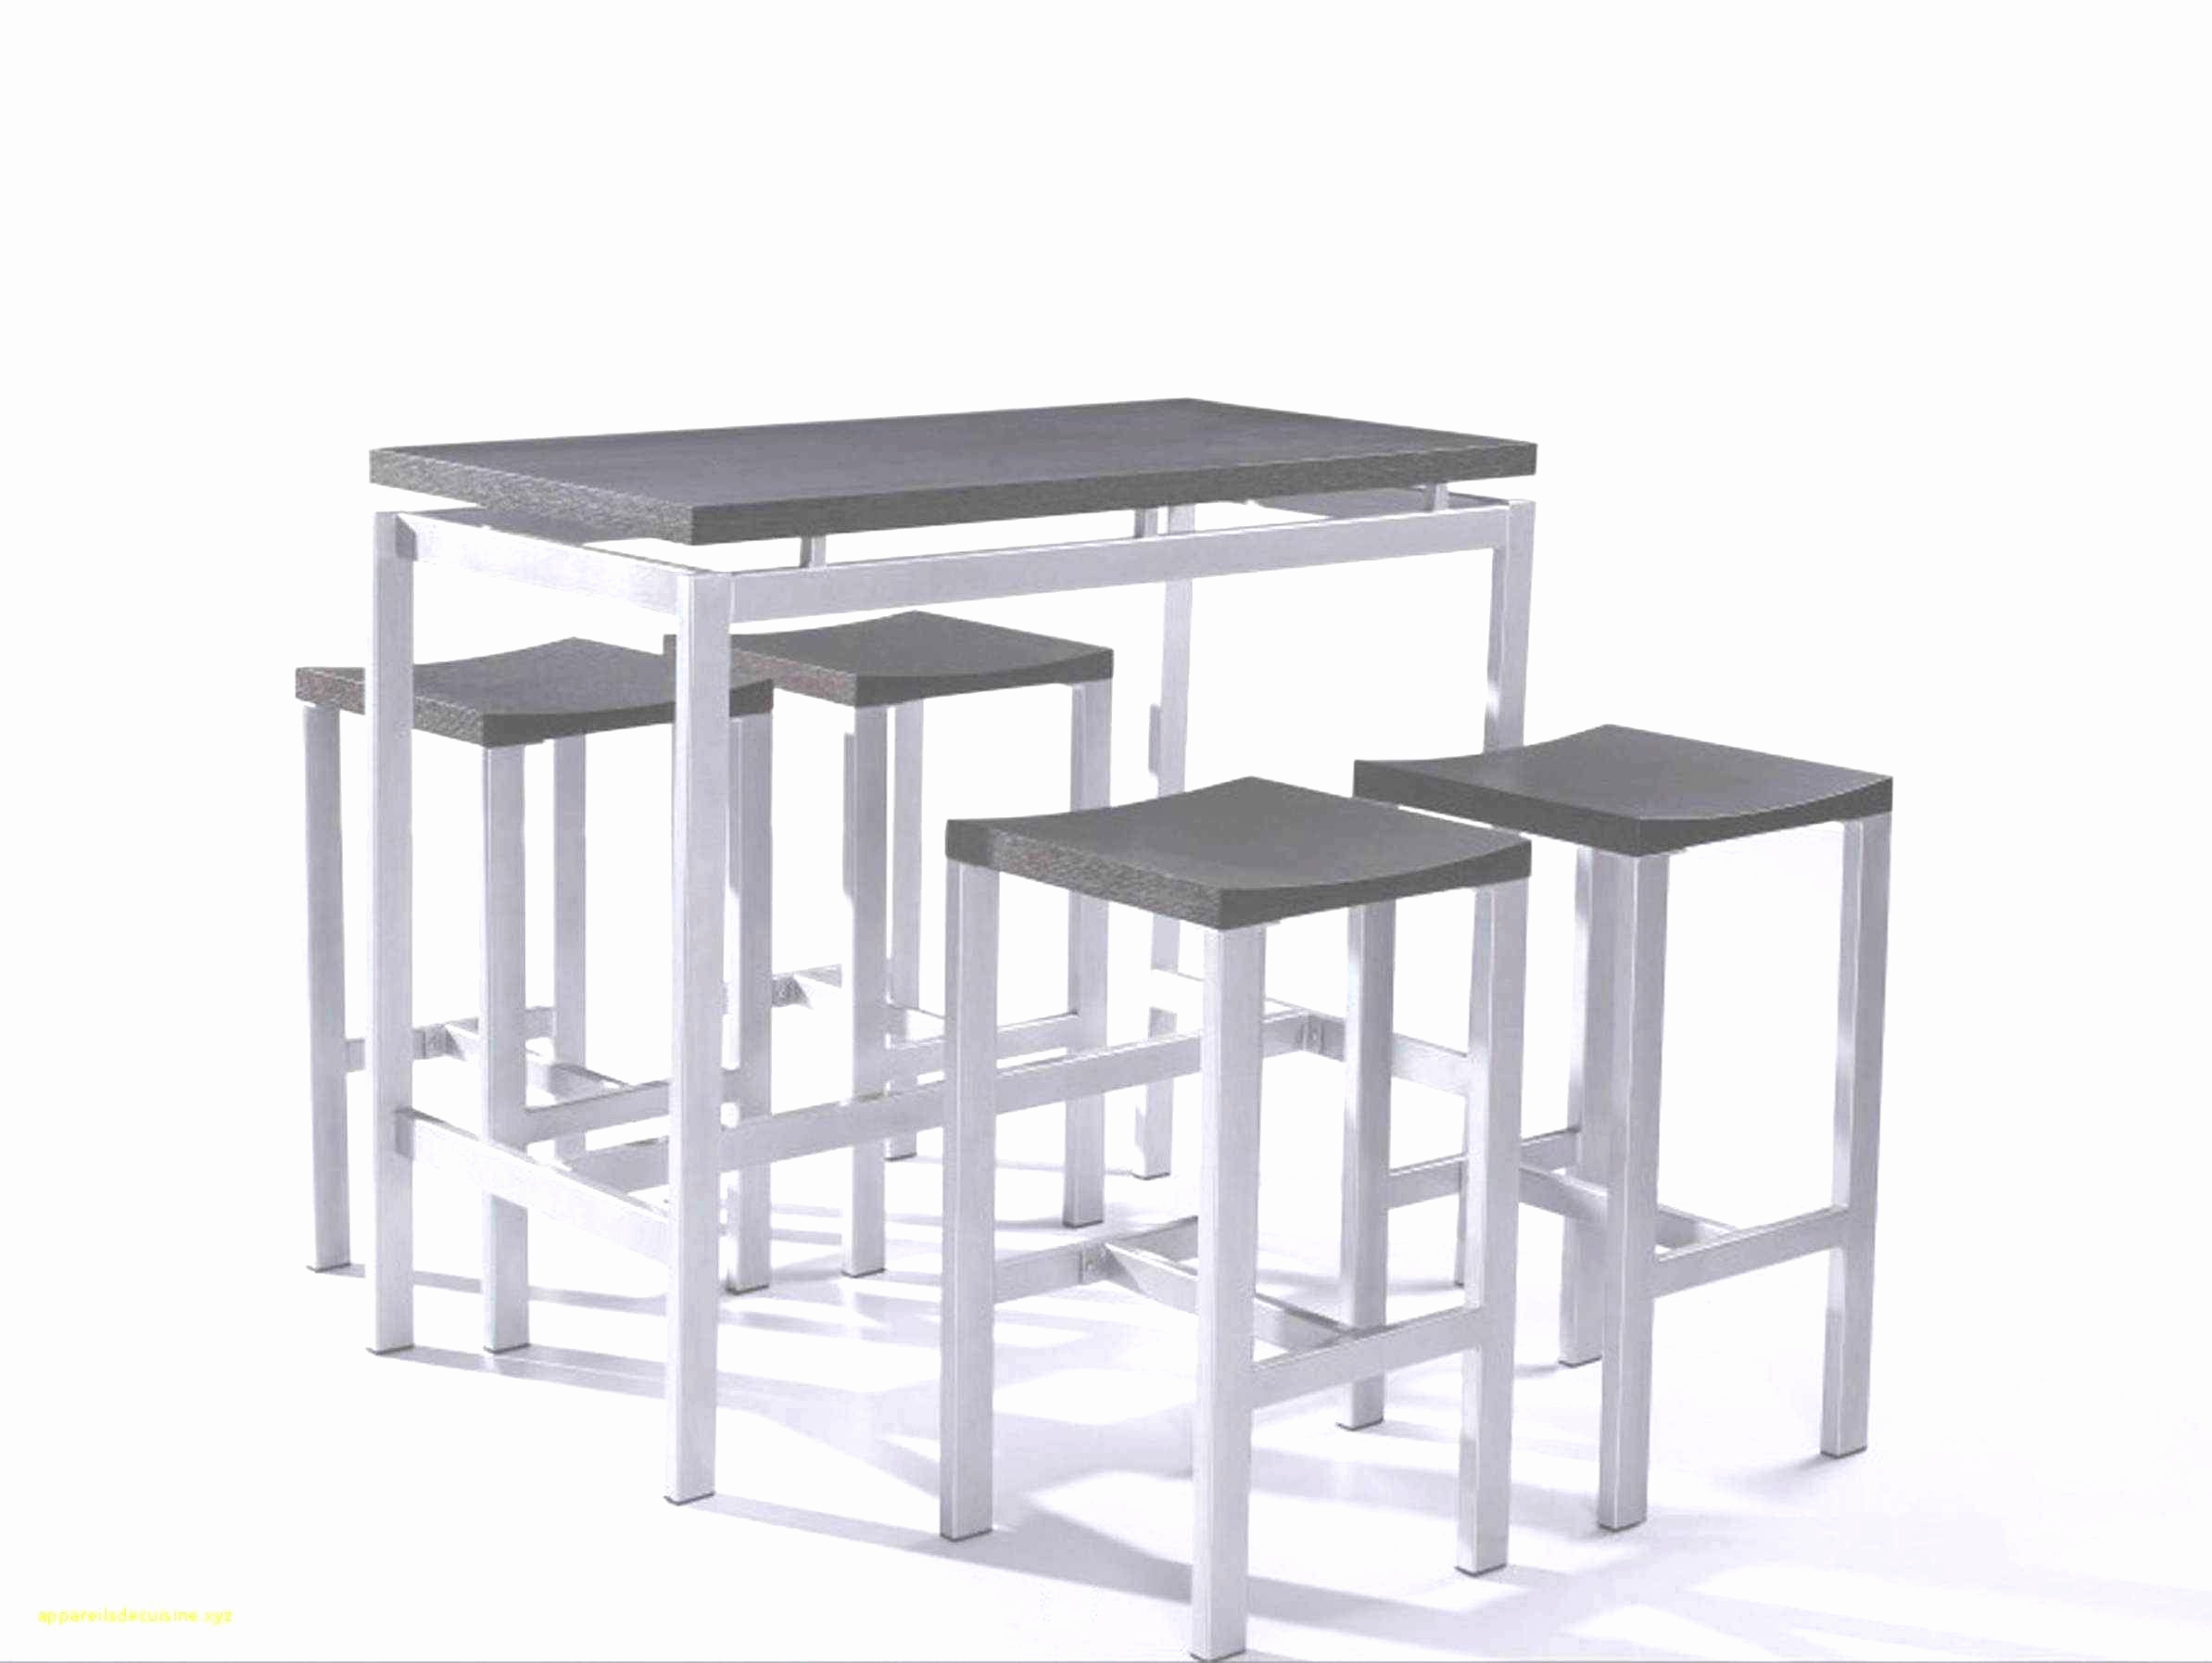 table basse notre monde unique chaise metal jardin recursiveuniverse conception de jardin of table basse notre monde